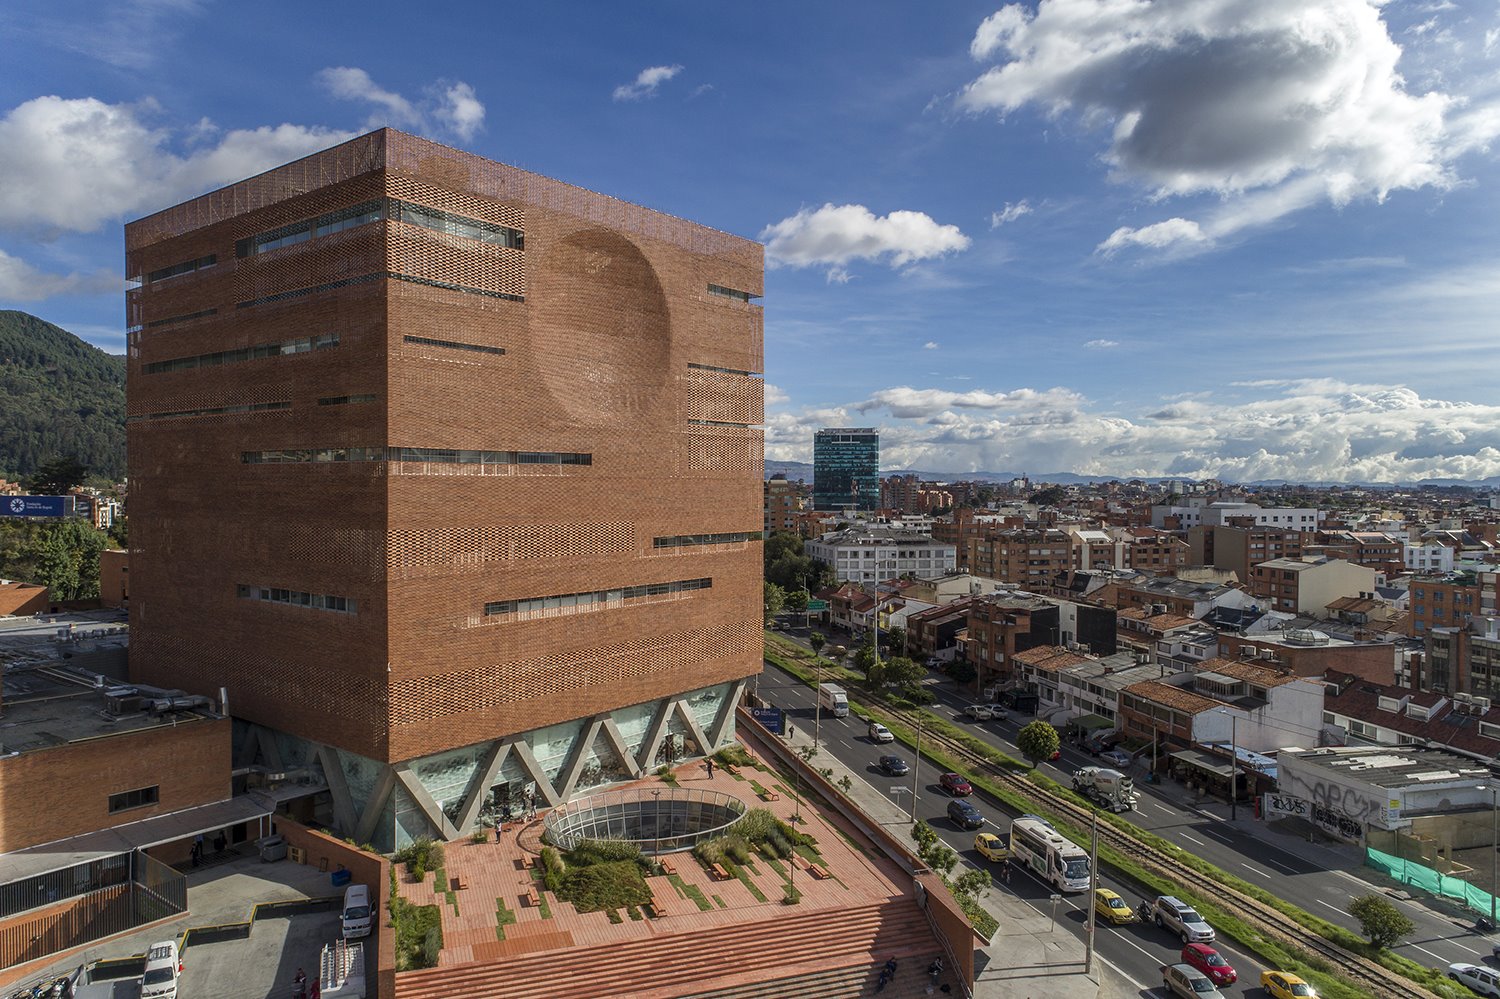 RIBA 2021 Expansion of the University Hospital of the Santa Fe de Bogotá Foundation Columbia El Equipo Mazzanti Giancarlo Mazzanti photograph by Alejandro Arango